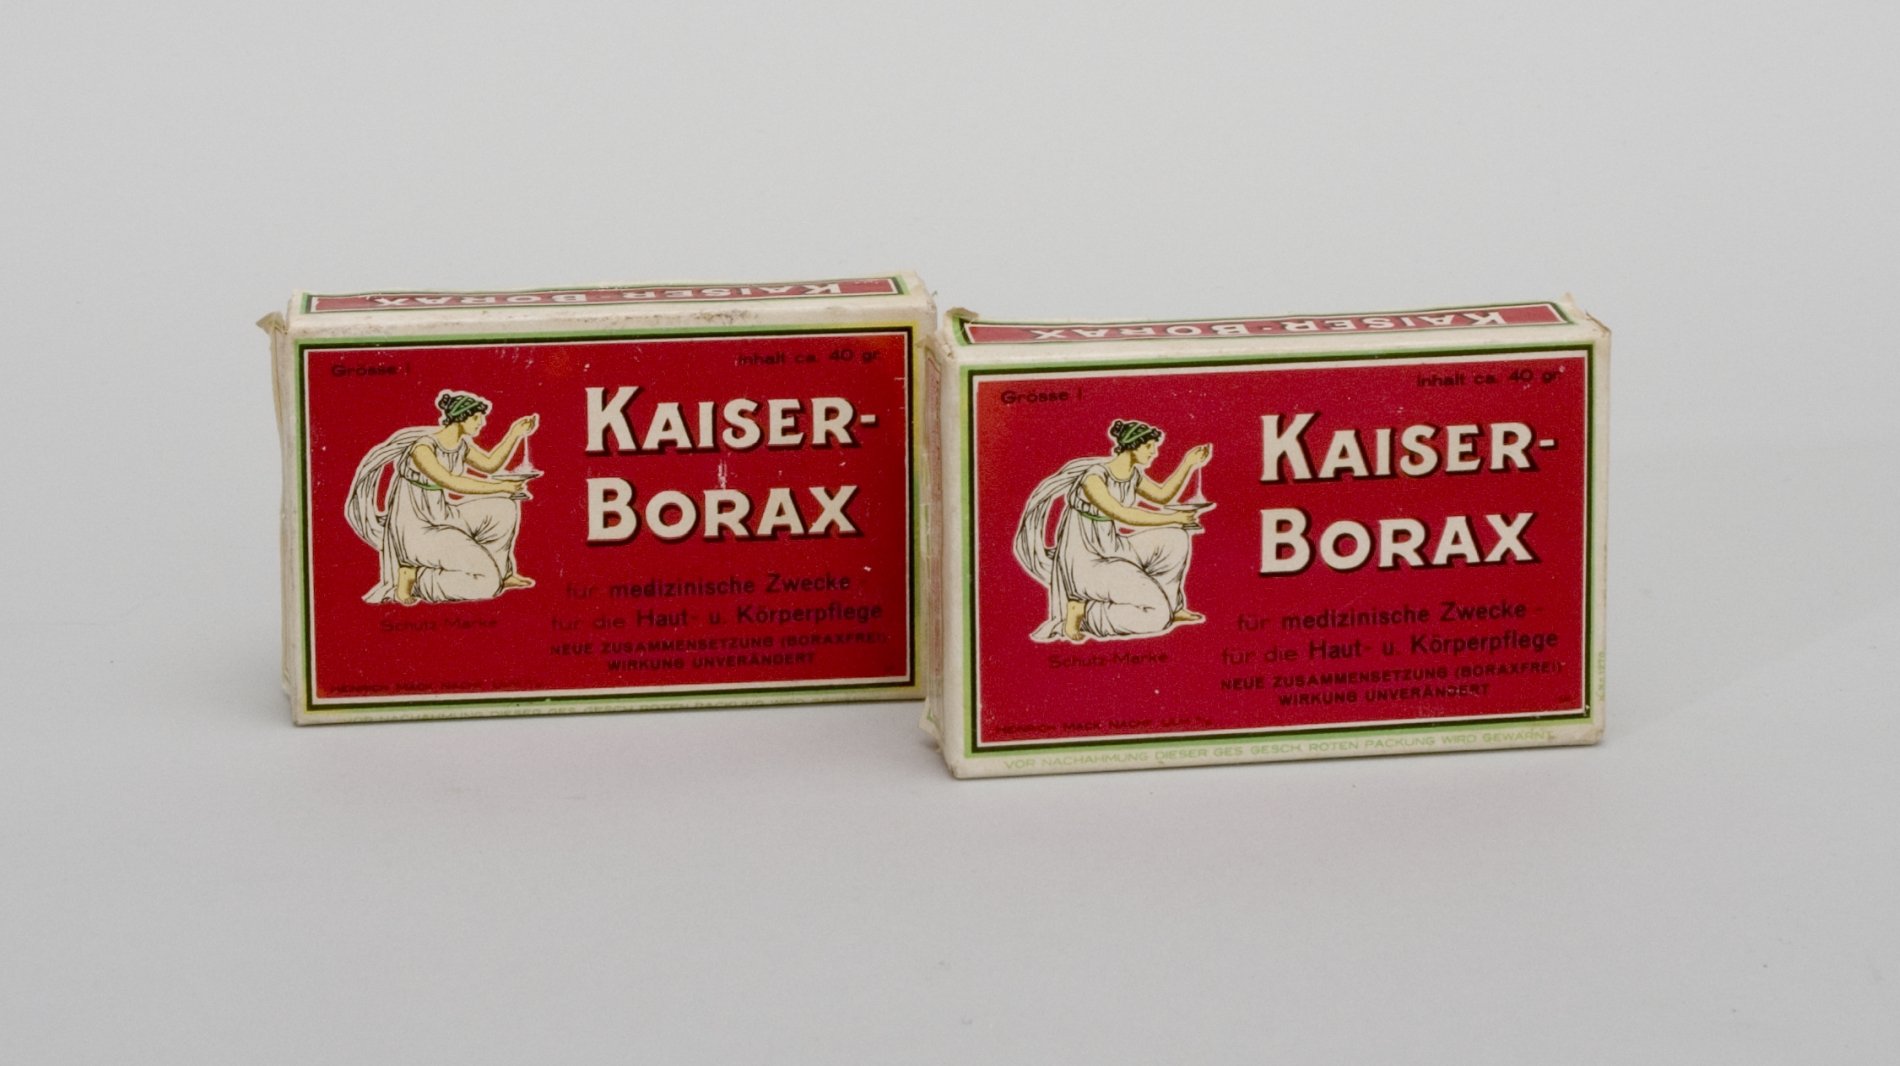 Zwei Packungen "Kaiser-Borax" (Stiftung Domäne Dahlem - Landgut und Museum, Weiternutzung nur mit Genehmigung des Museums CC BY-NC-SA)